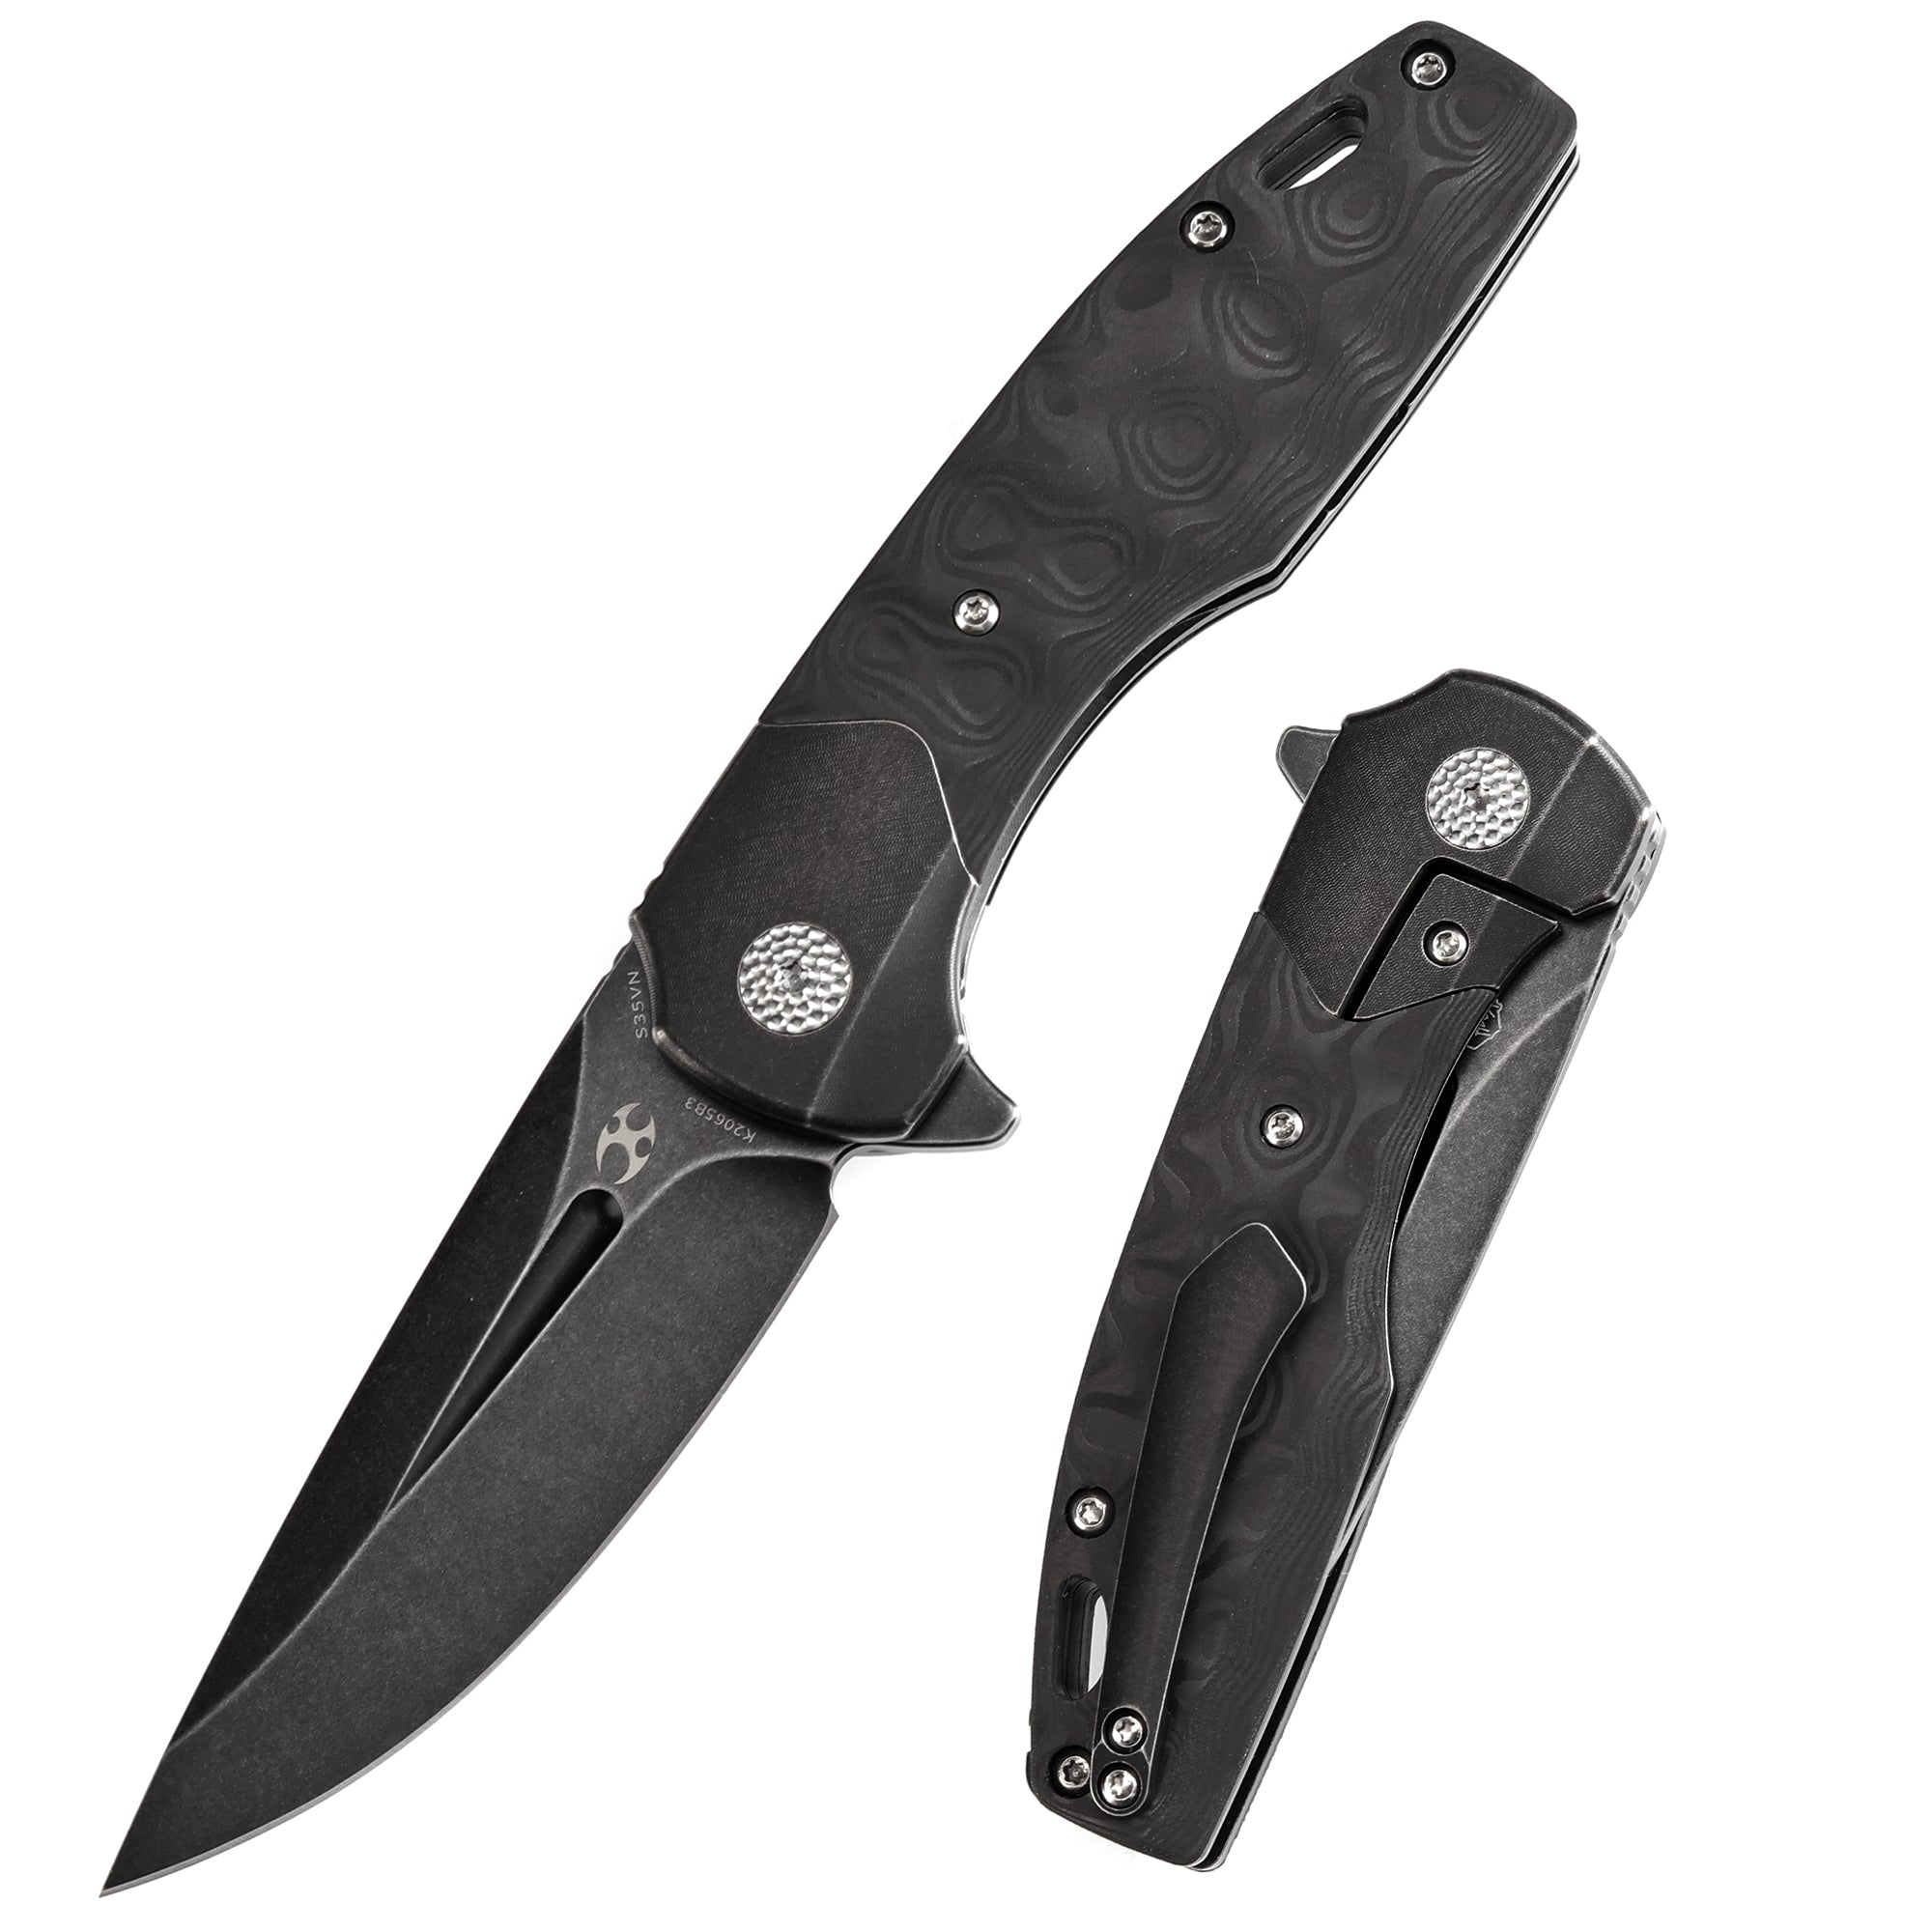 Kansept Cassowary K2065B3 Black CPM-S35VN Blade Titanium+Carbon Fiber Handle Edc Flipper Knife